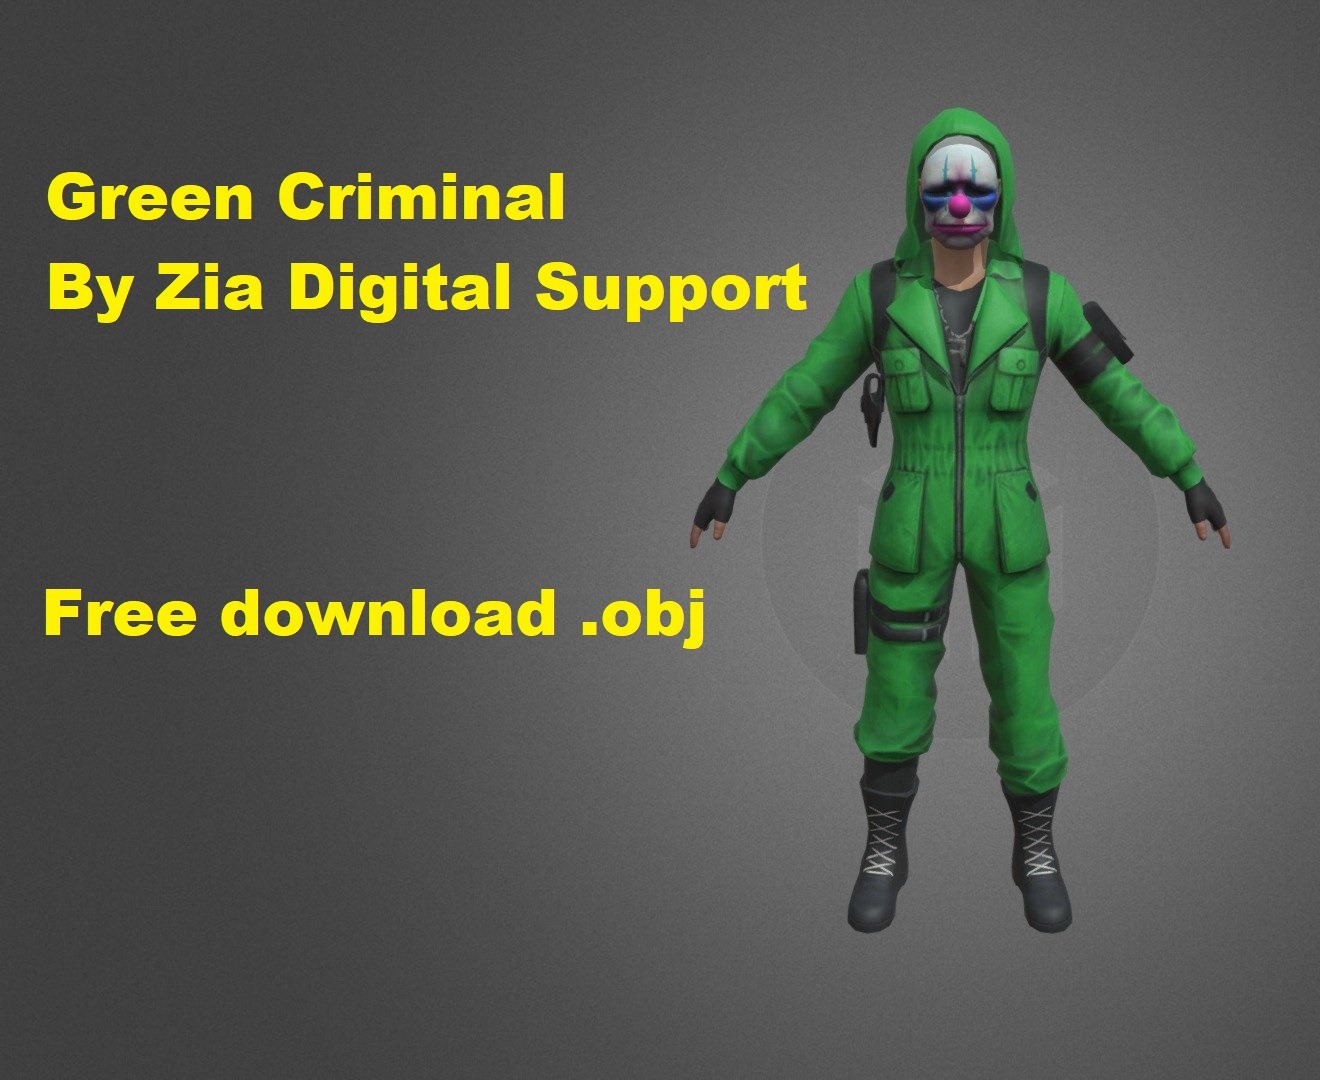 Prisma 3d free fire 3D Model, obj Free download, Green Criminal, Prisma 3d modeling